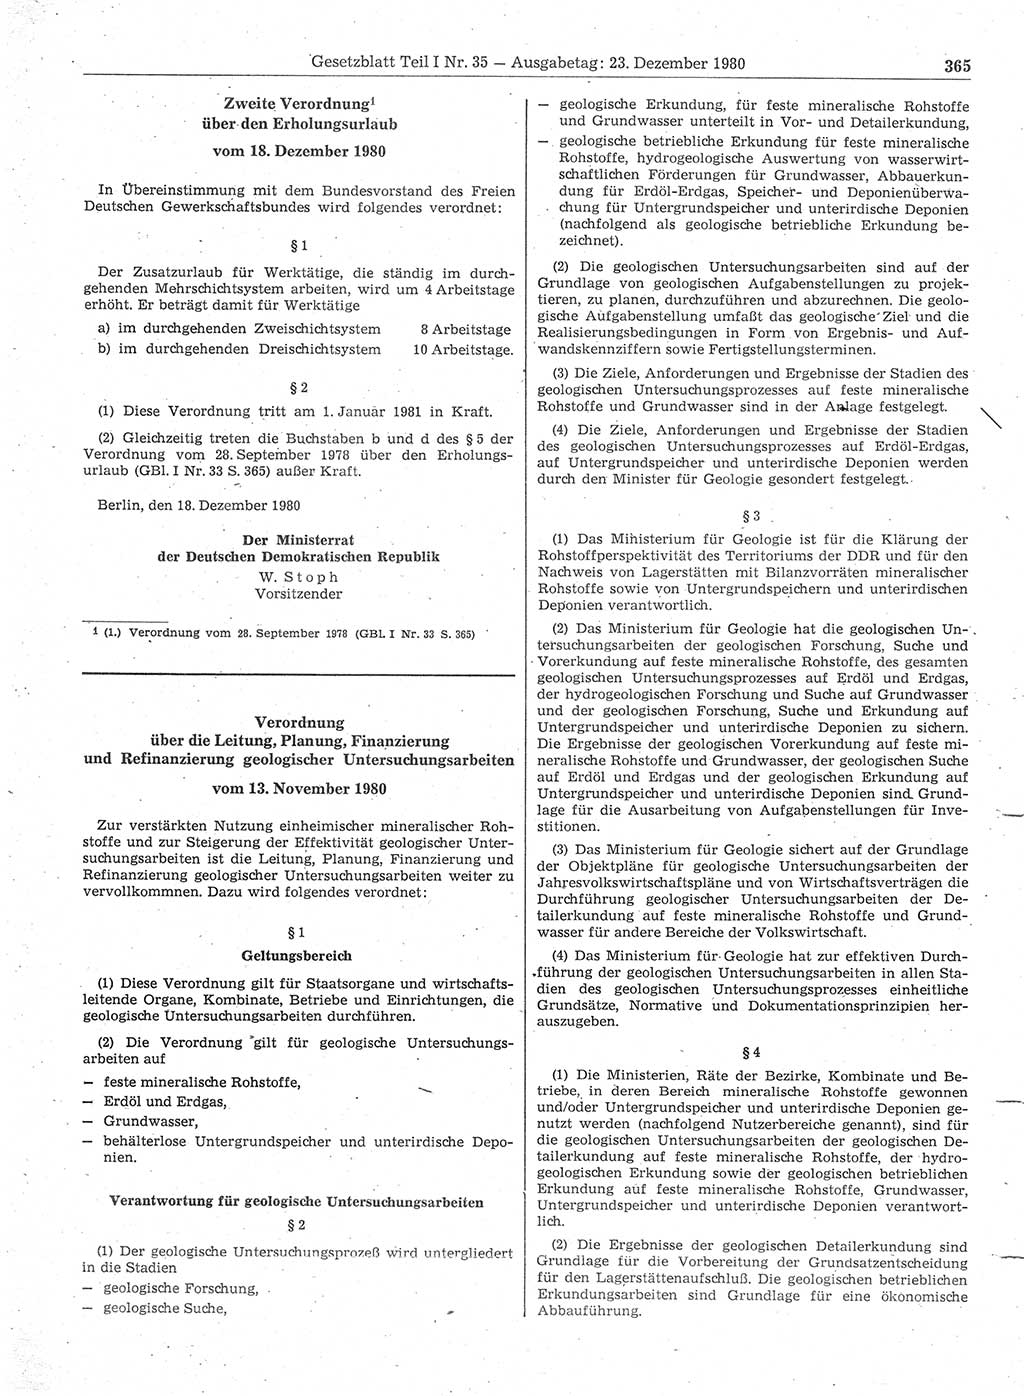 Gesetzblatt (GBl.) der Deutschen Demokratischen Republik (DDR) Teil Ⅰ 1980, Seite 365 (GBl. DDR Ⅰ 1980, S. 365)